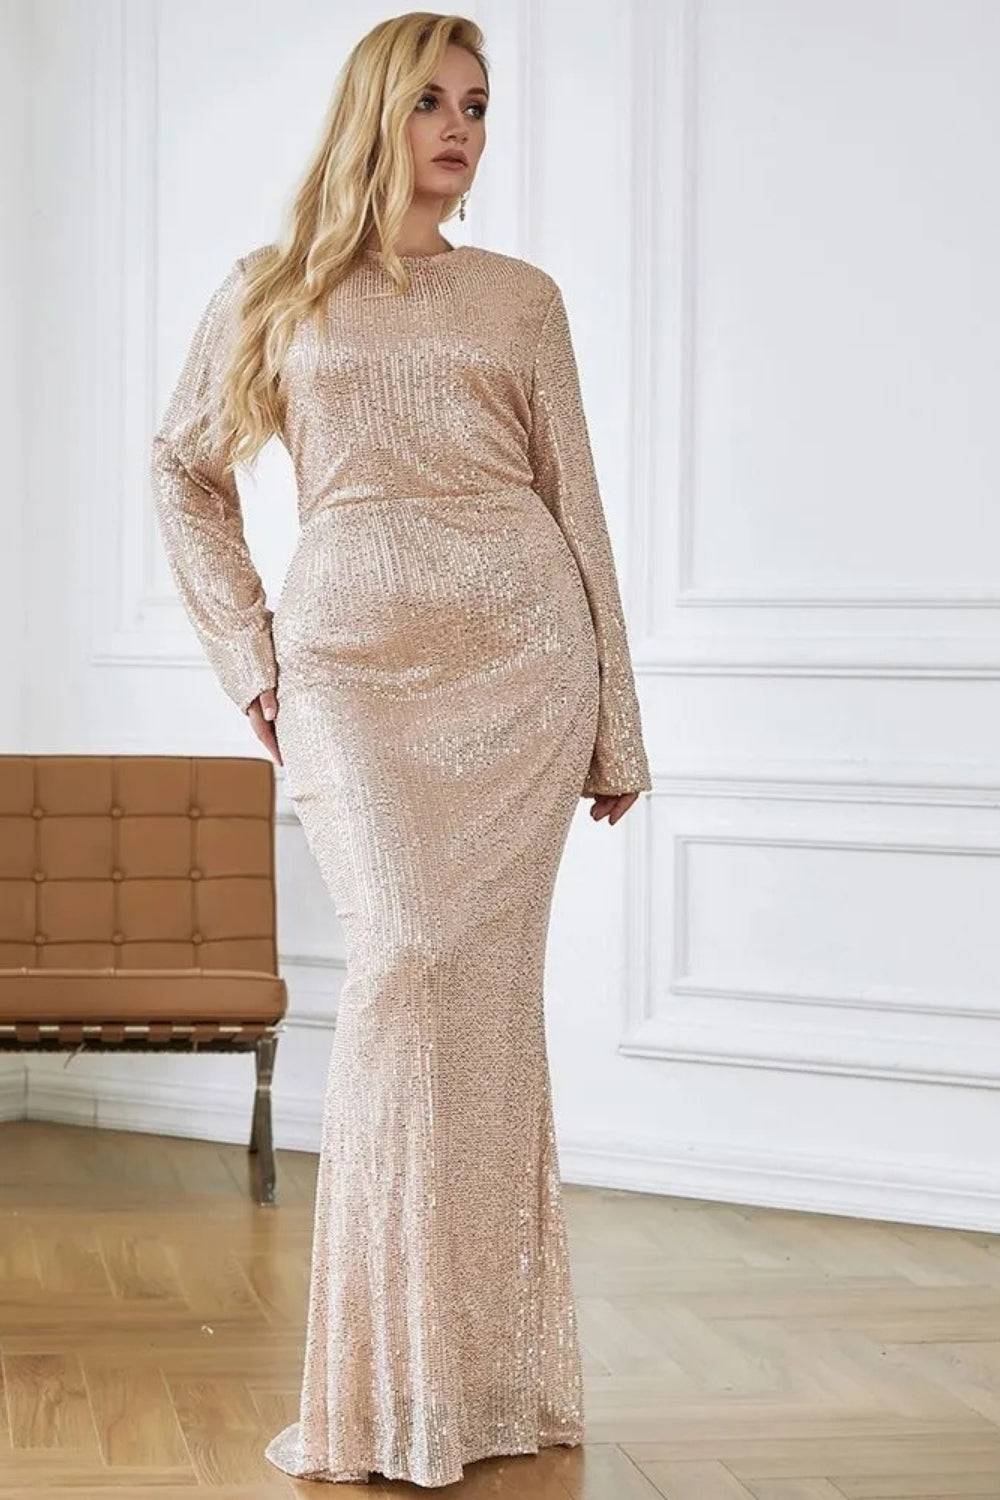 All Over Sequin Plus Size Maxi Dress - TGC Boutique - Plus Size Dress